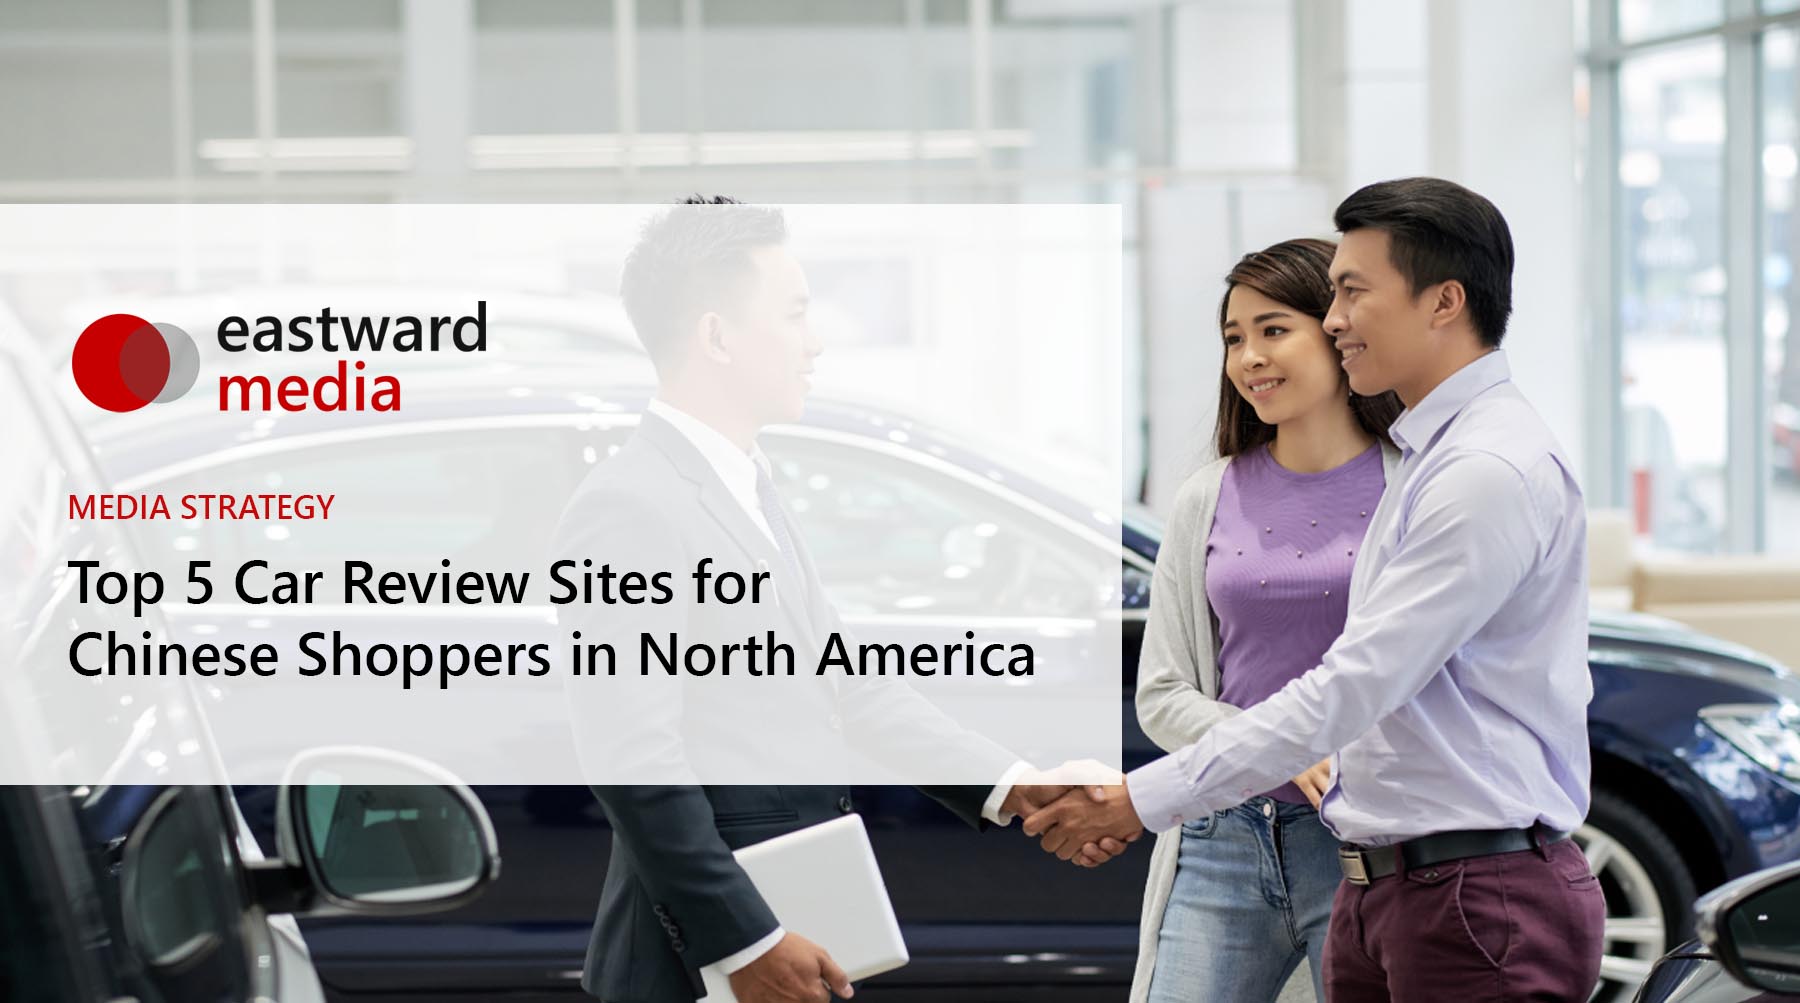 Eastward Media - Top 5 Car Review Sites